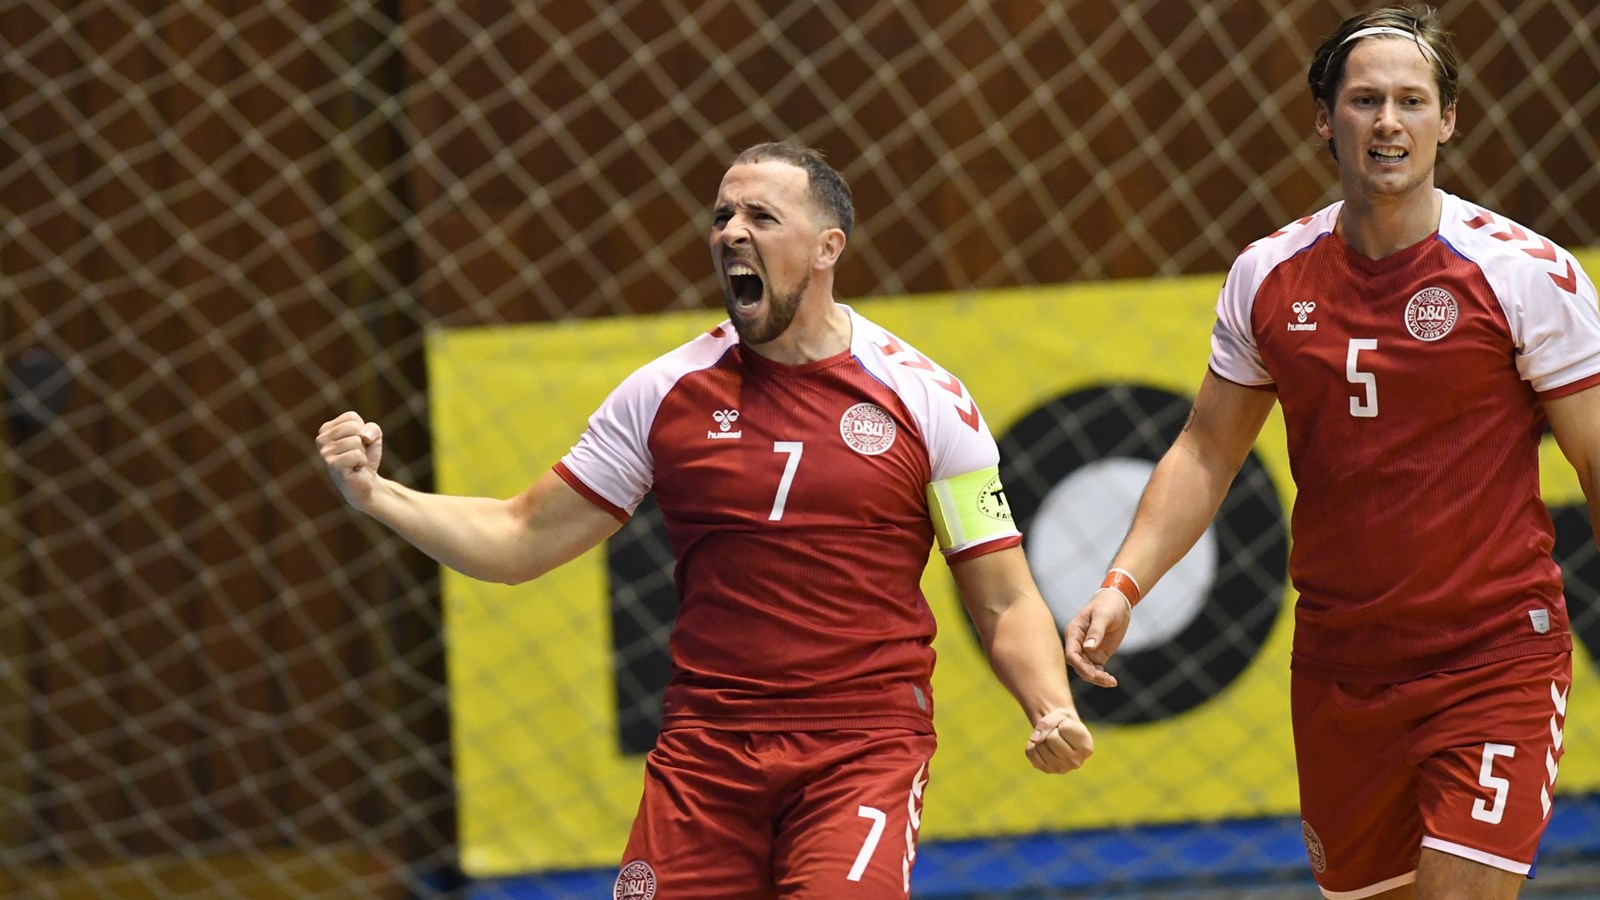 Futsallandsholdet spiller VM-kvalifikation på hjemmebane